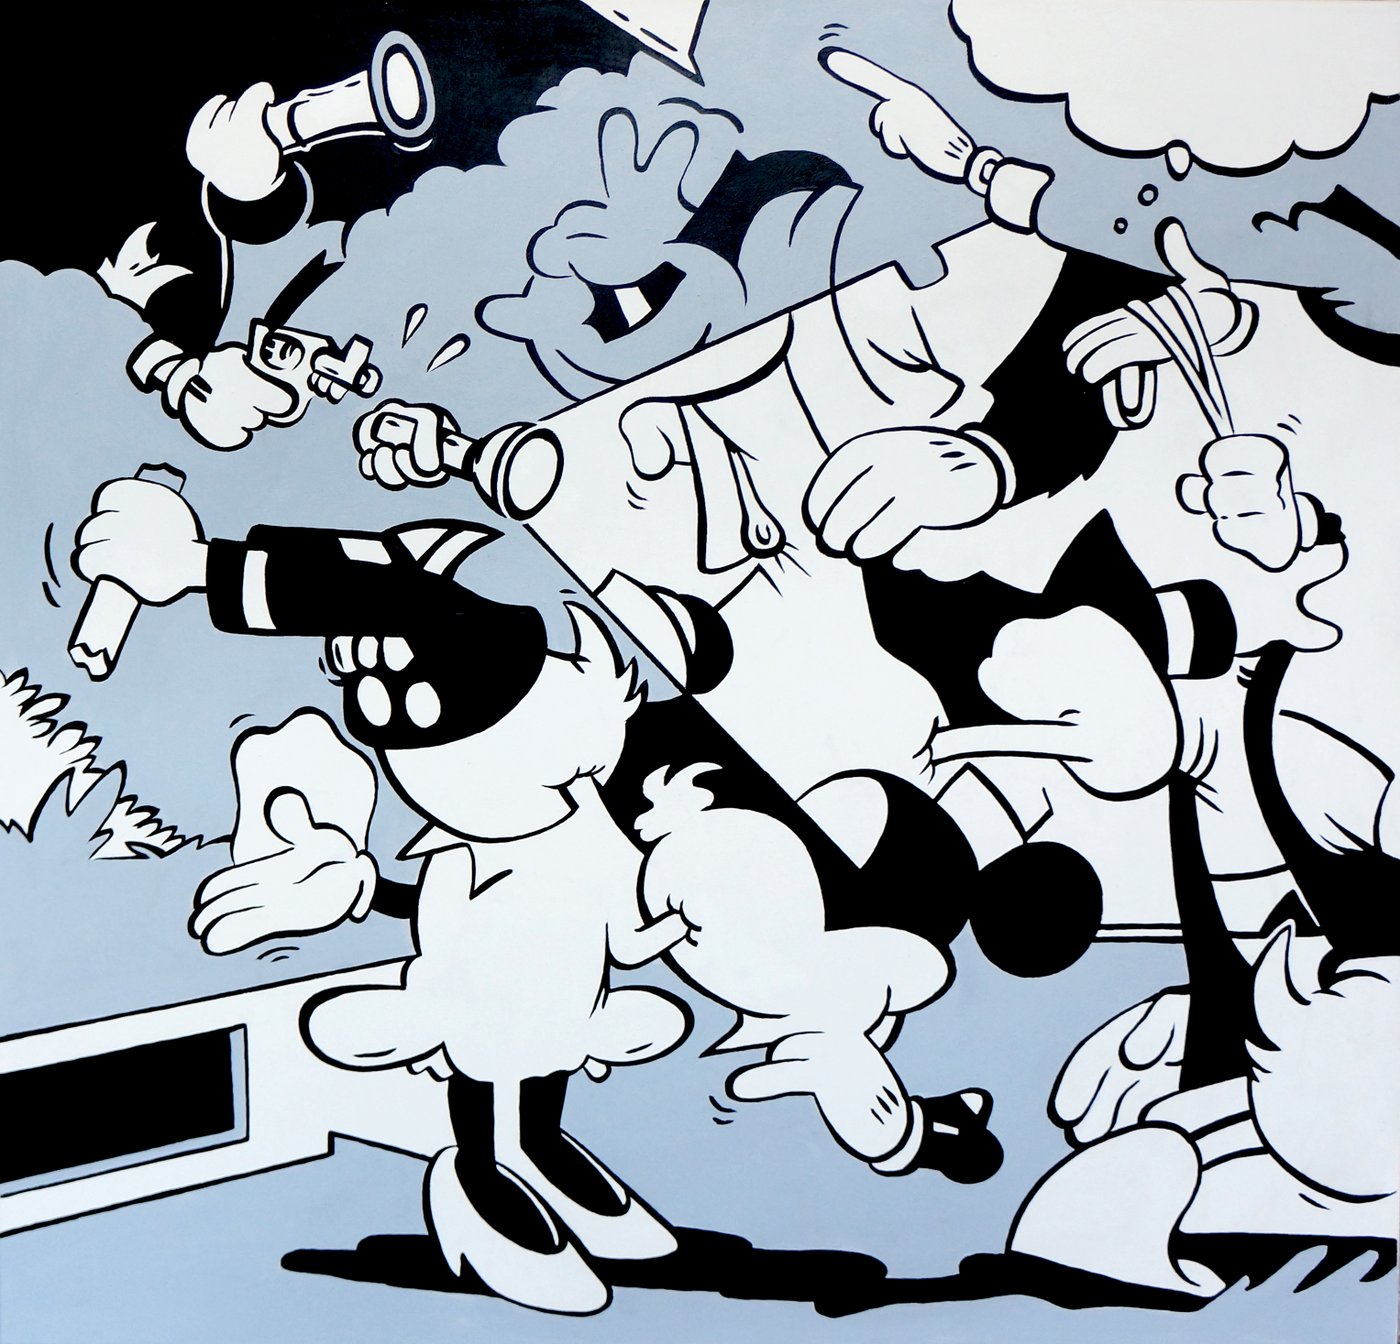 Bild mehreren schwarz-weißen Comicfiguren die ineinander übergehen und an Disneyfiguren erinnern auf blauem Hintergrund